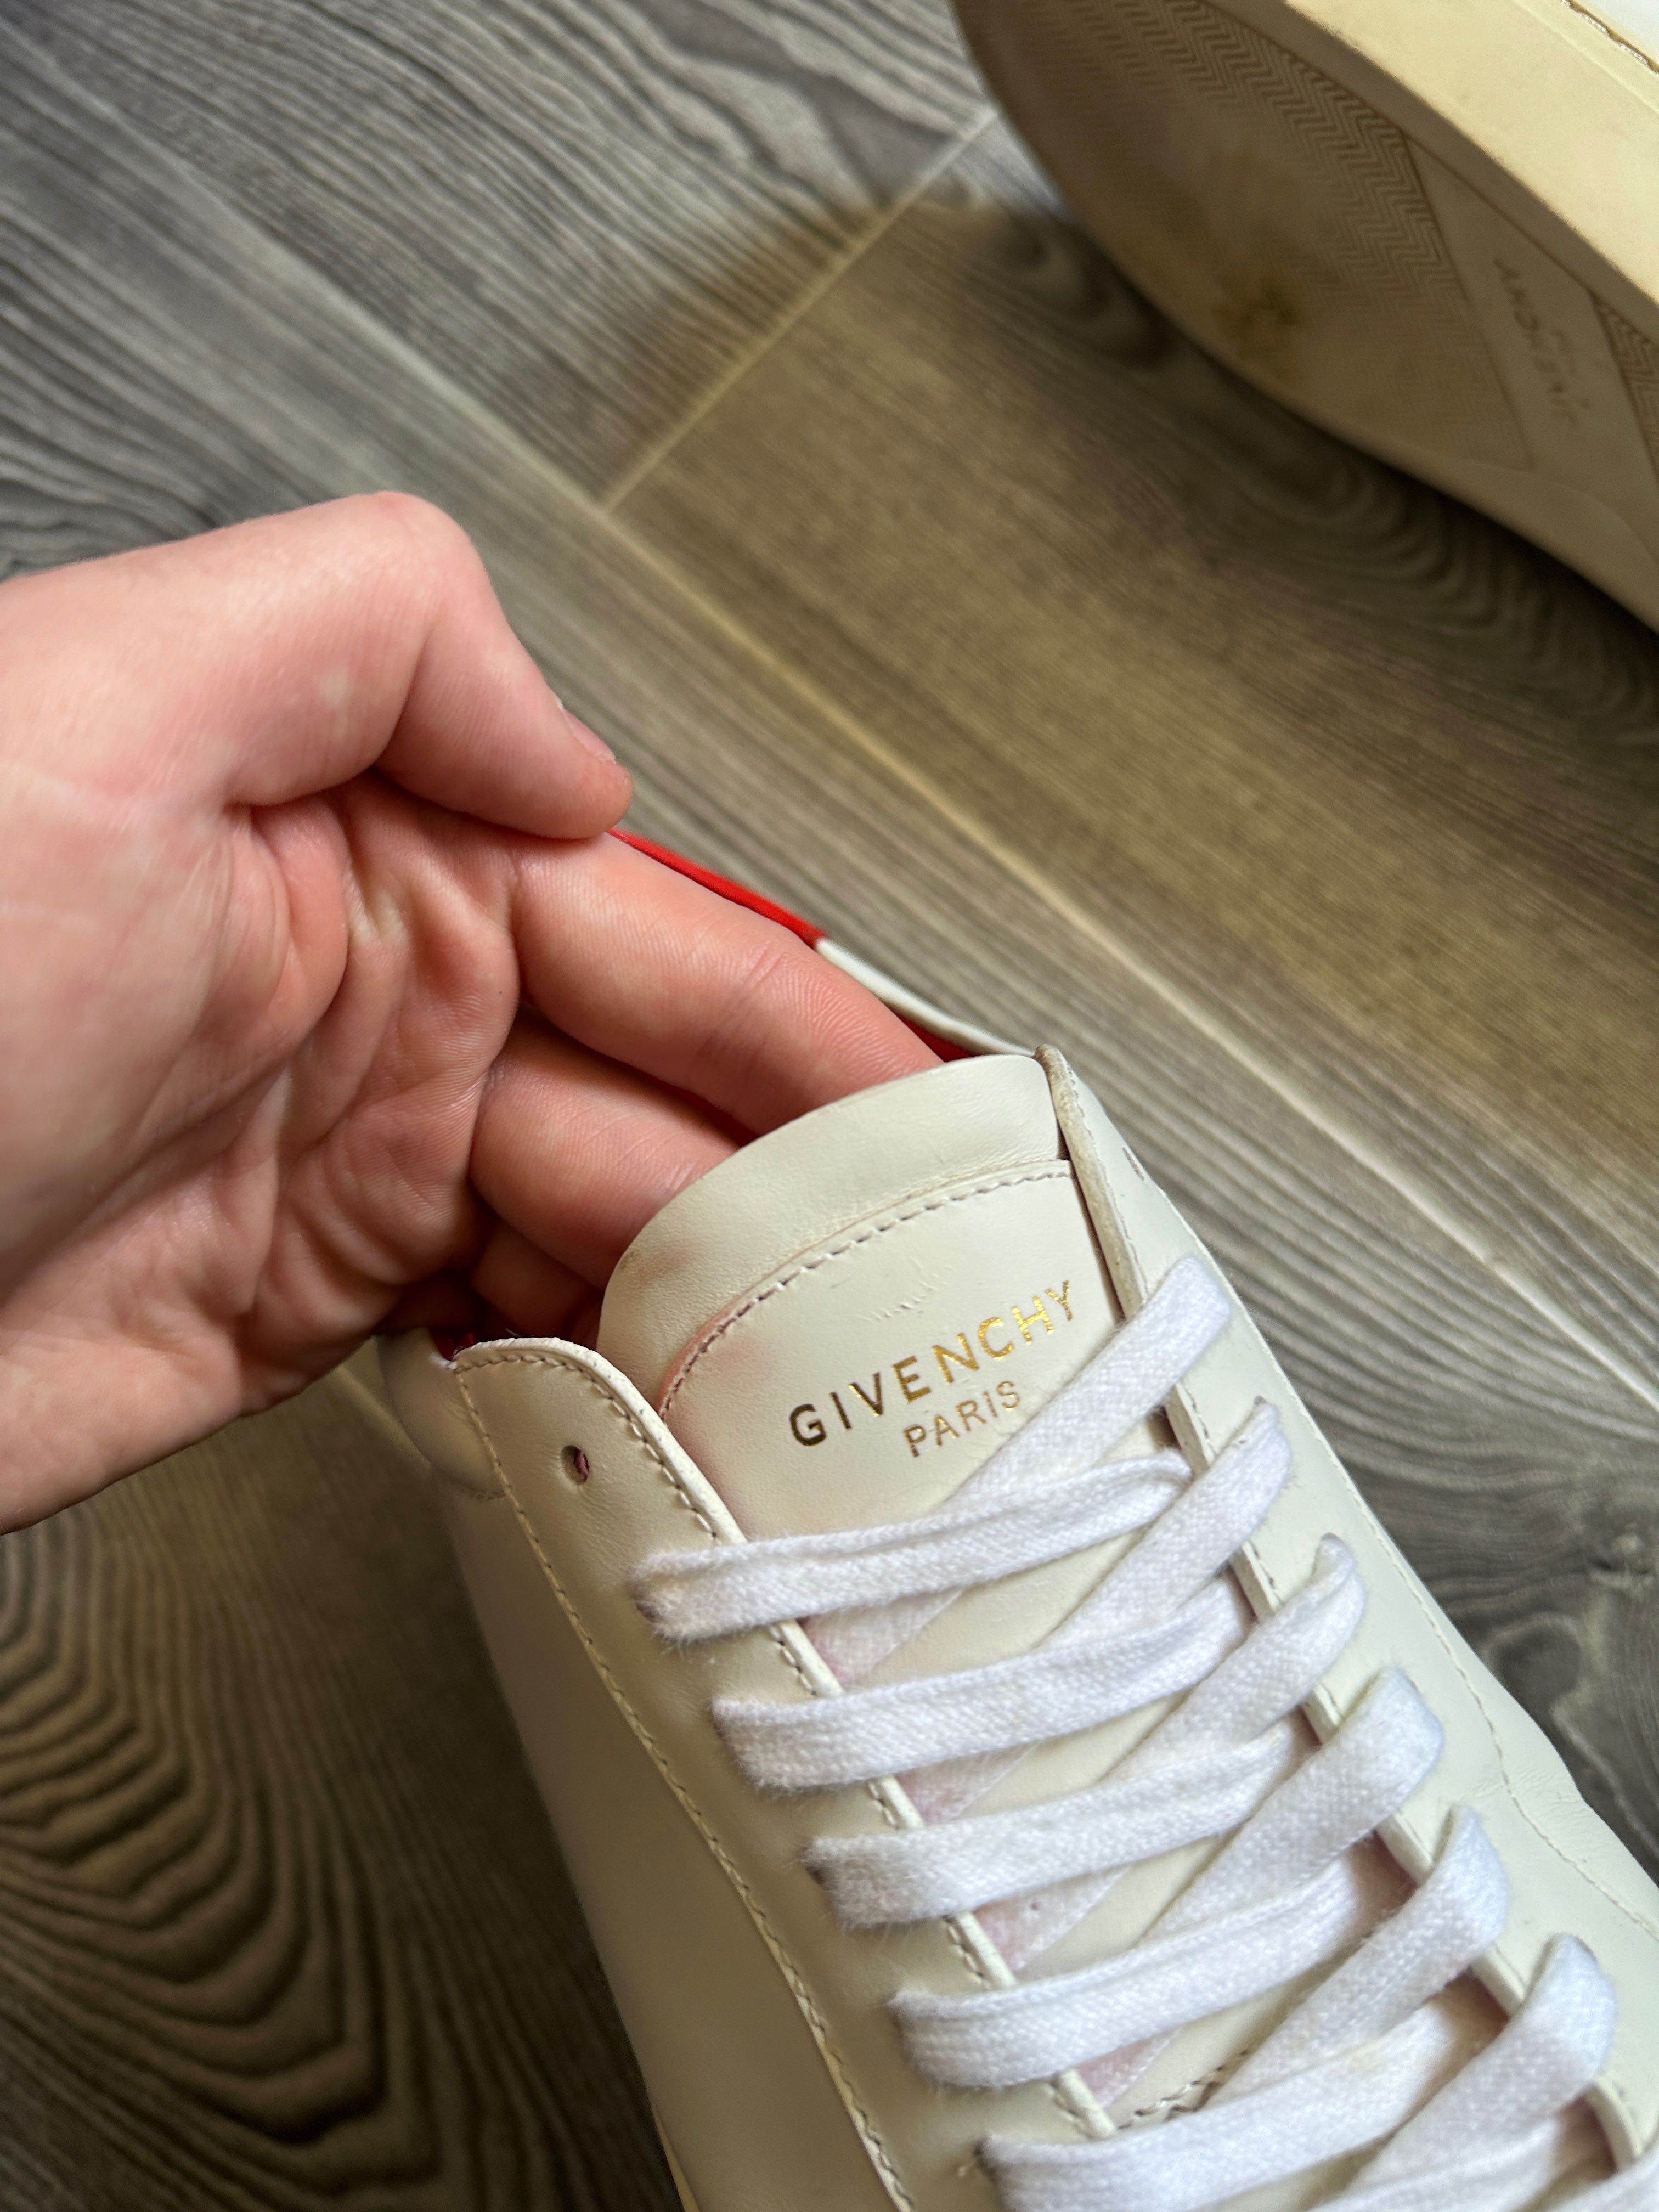 Мужские кроссовки-кеды Givenchy paris размер 42,5 стелька 27см